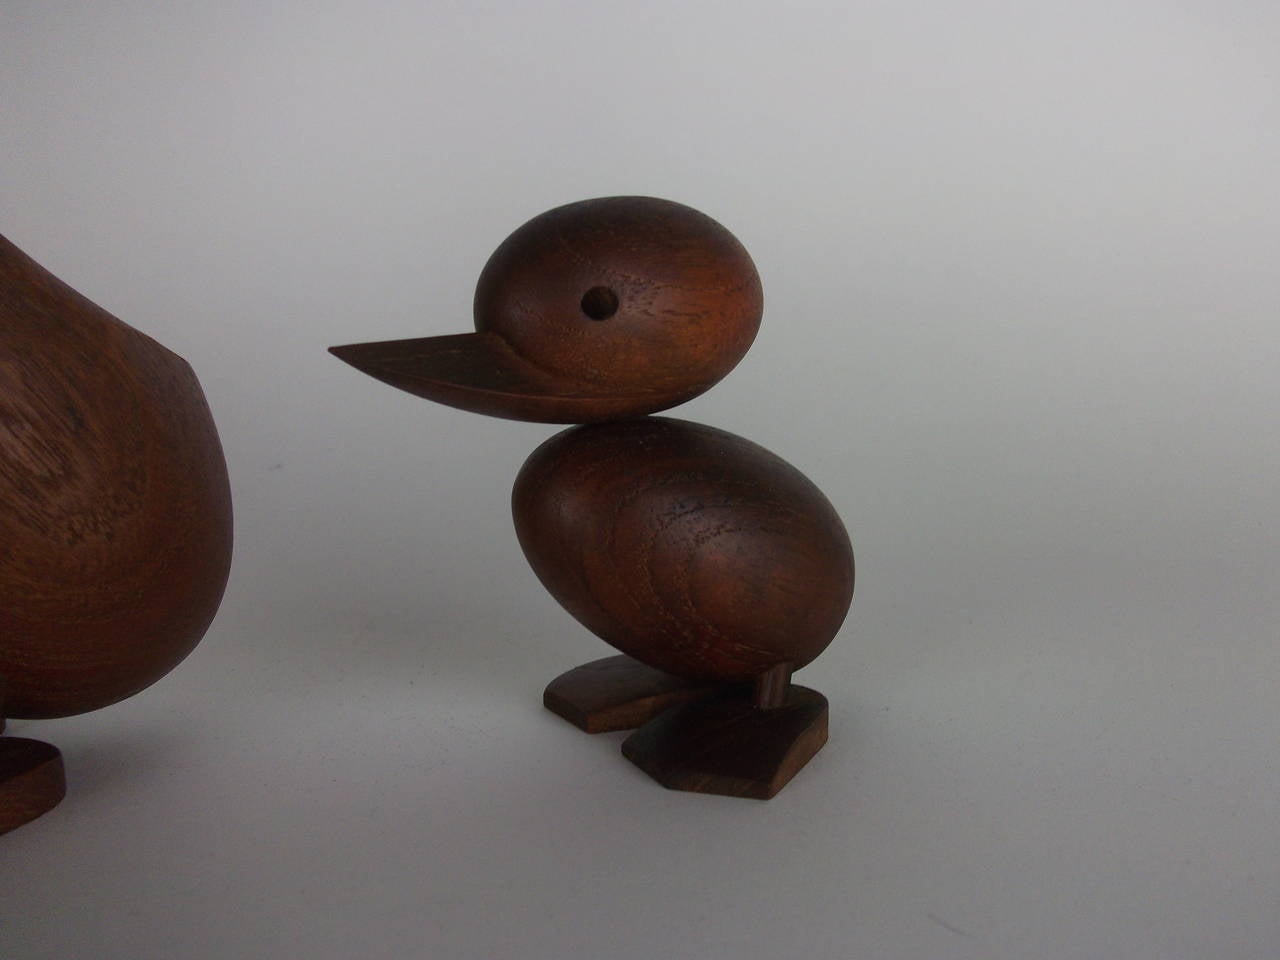 1950s Teak Ducks designed by Hans Bolling for Orskov Skjode, Denmark 1